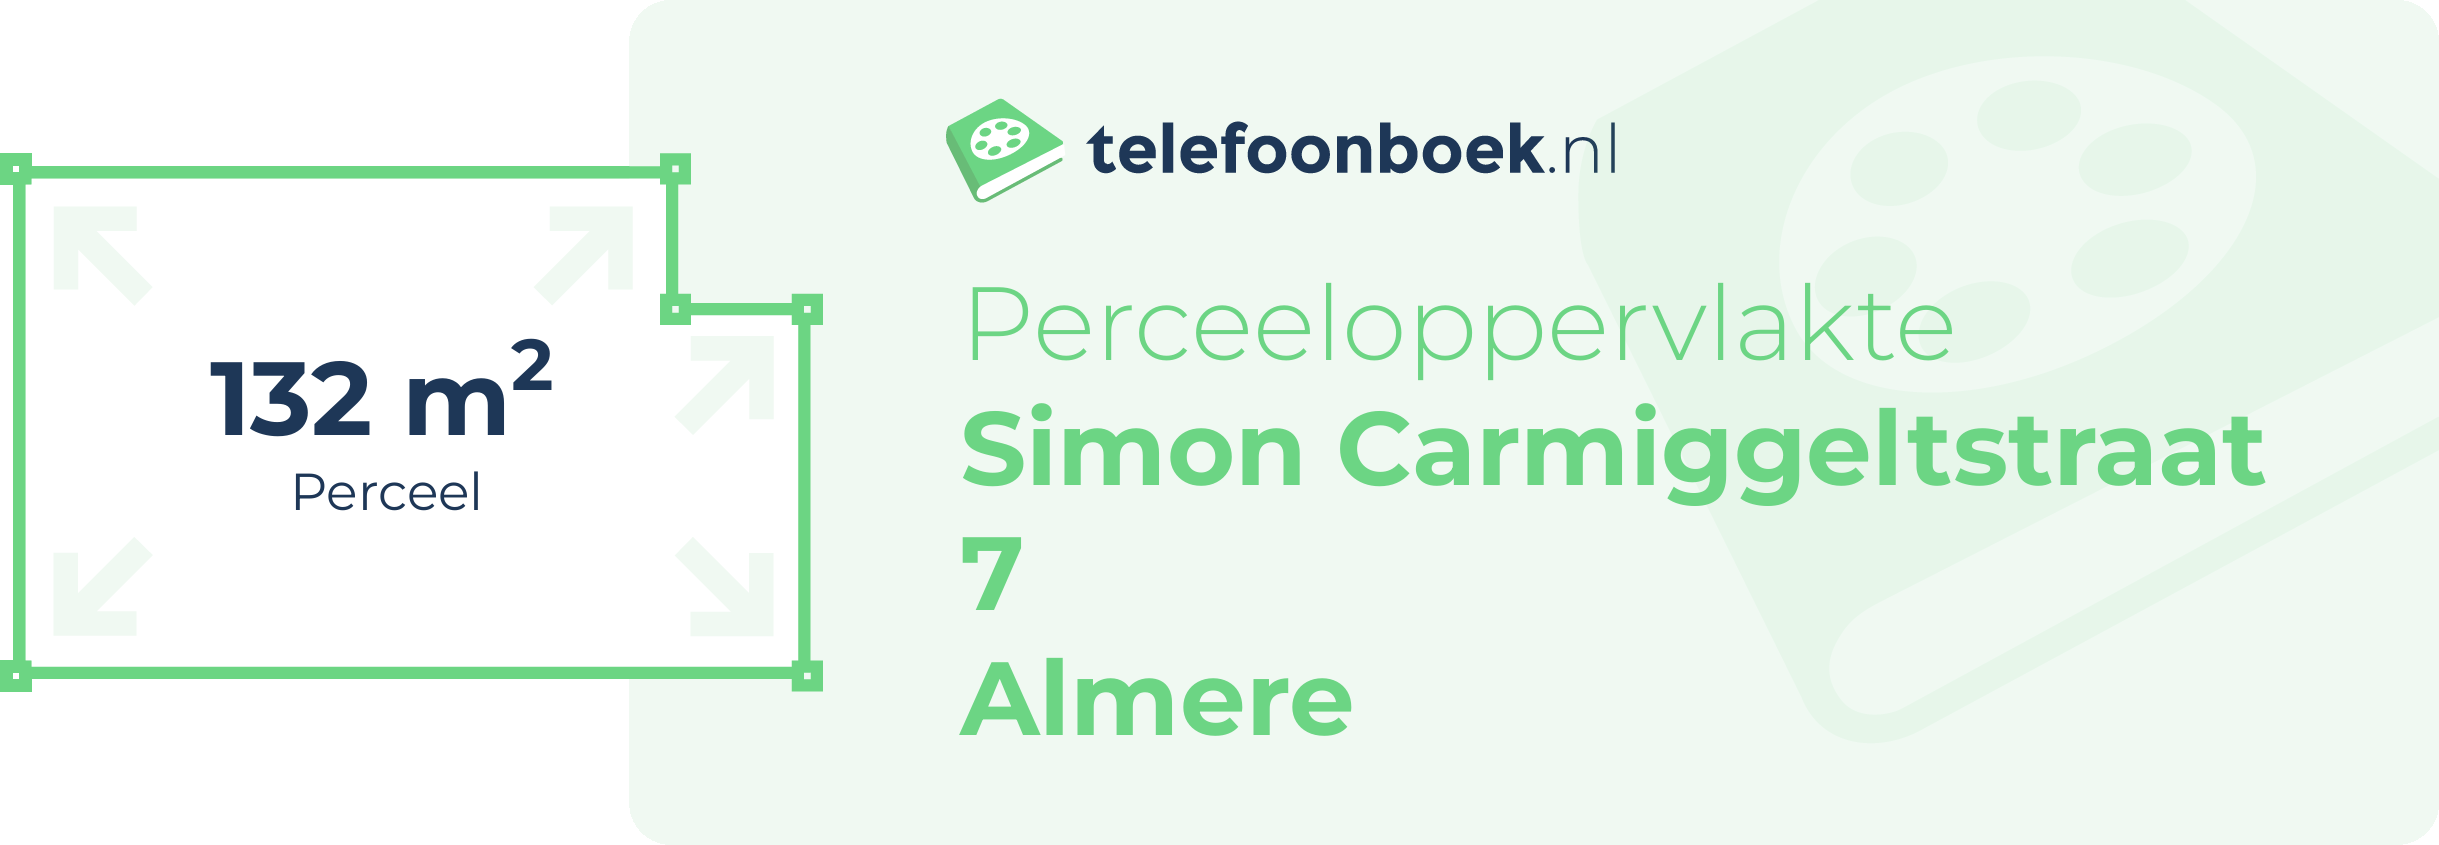 Perceeloppervlakte Simon Carmiggeltstraat 7 Almere